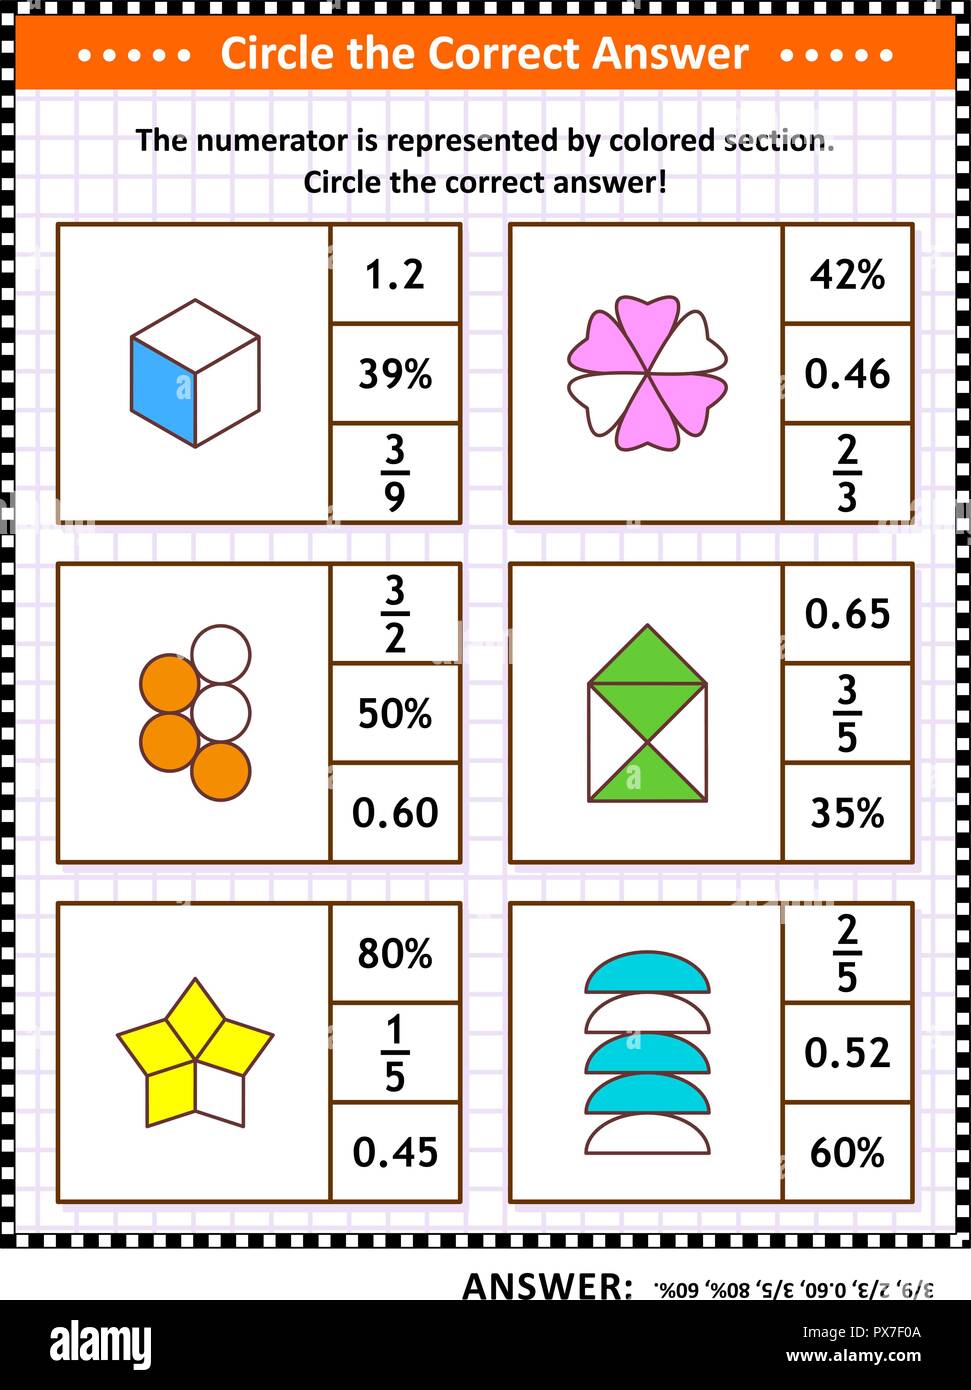 Mathematische Fähigkeiten Schulung visual Puzzle oder Arbeitsblatt. Einen Kreis um die richtige Antwort. Suchen Sie die entsprechende Anzahl für jede bildliche Bruchteil Darstellung. Antwort enthalten. Stock Vektor